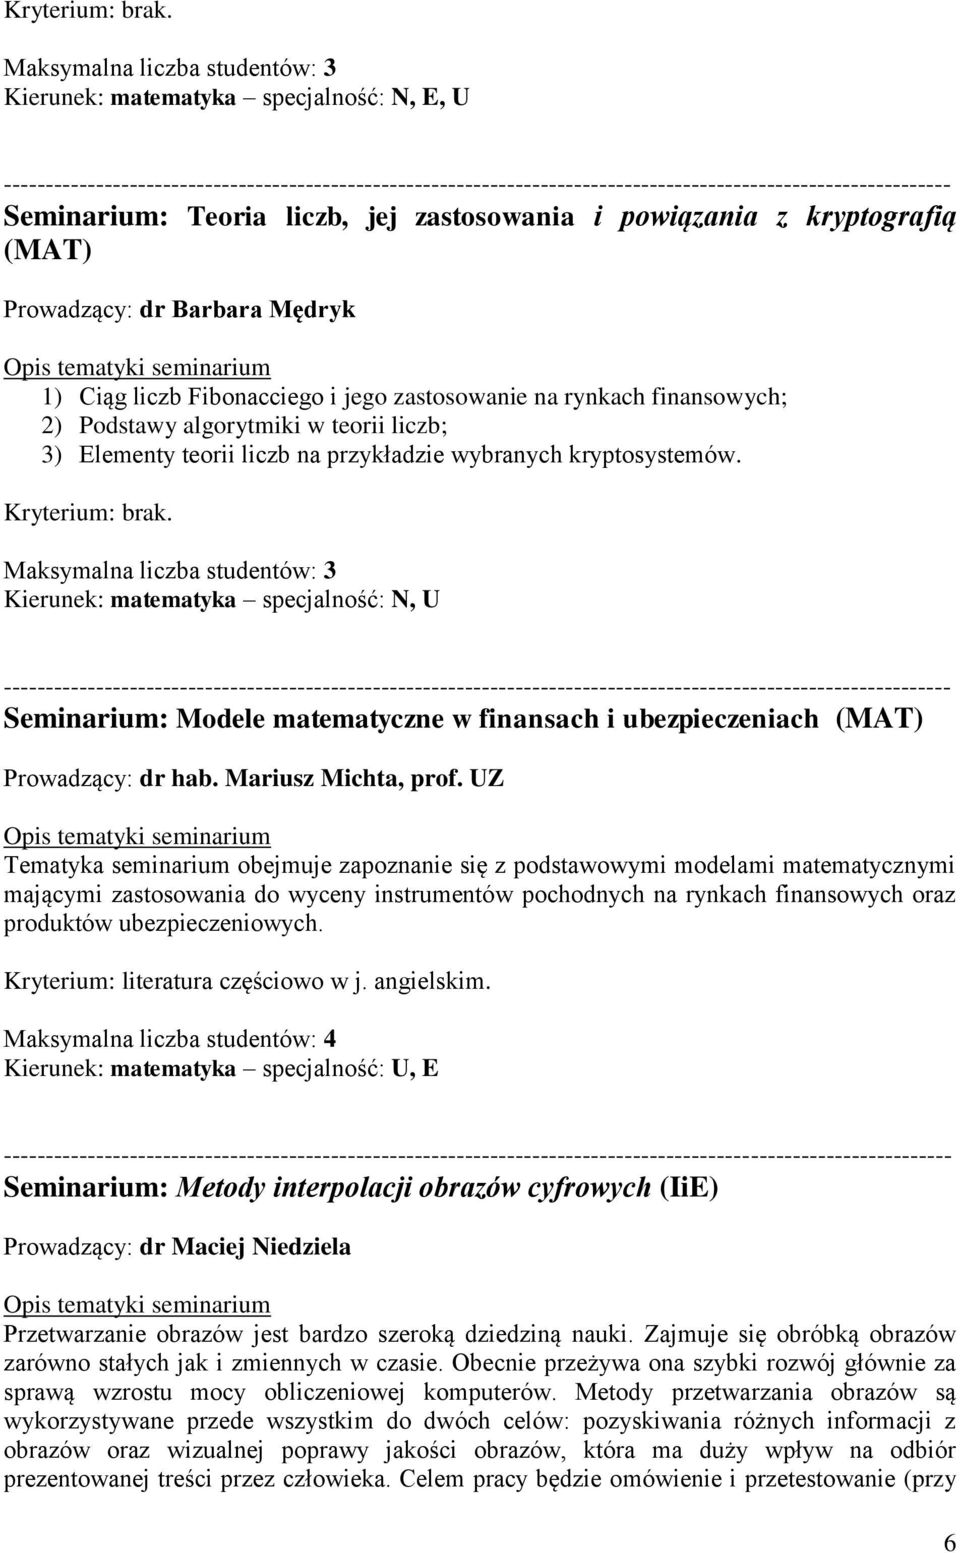 Maksymalna liczba studentów: 3 Kierunek: matematyka specjalność: N, U Seminarium: Modele matematyczne w finansach i ubezpieczeniach (MAT) Prowadzący: dr hab. Mariusz Michta, prof.